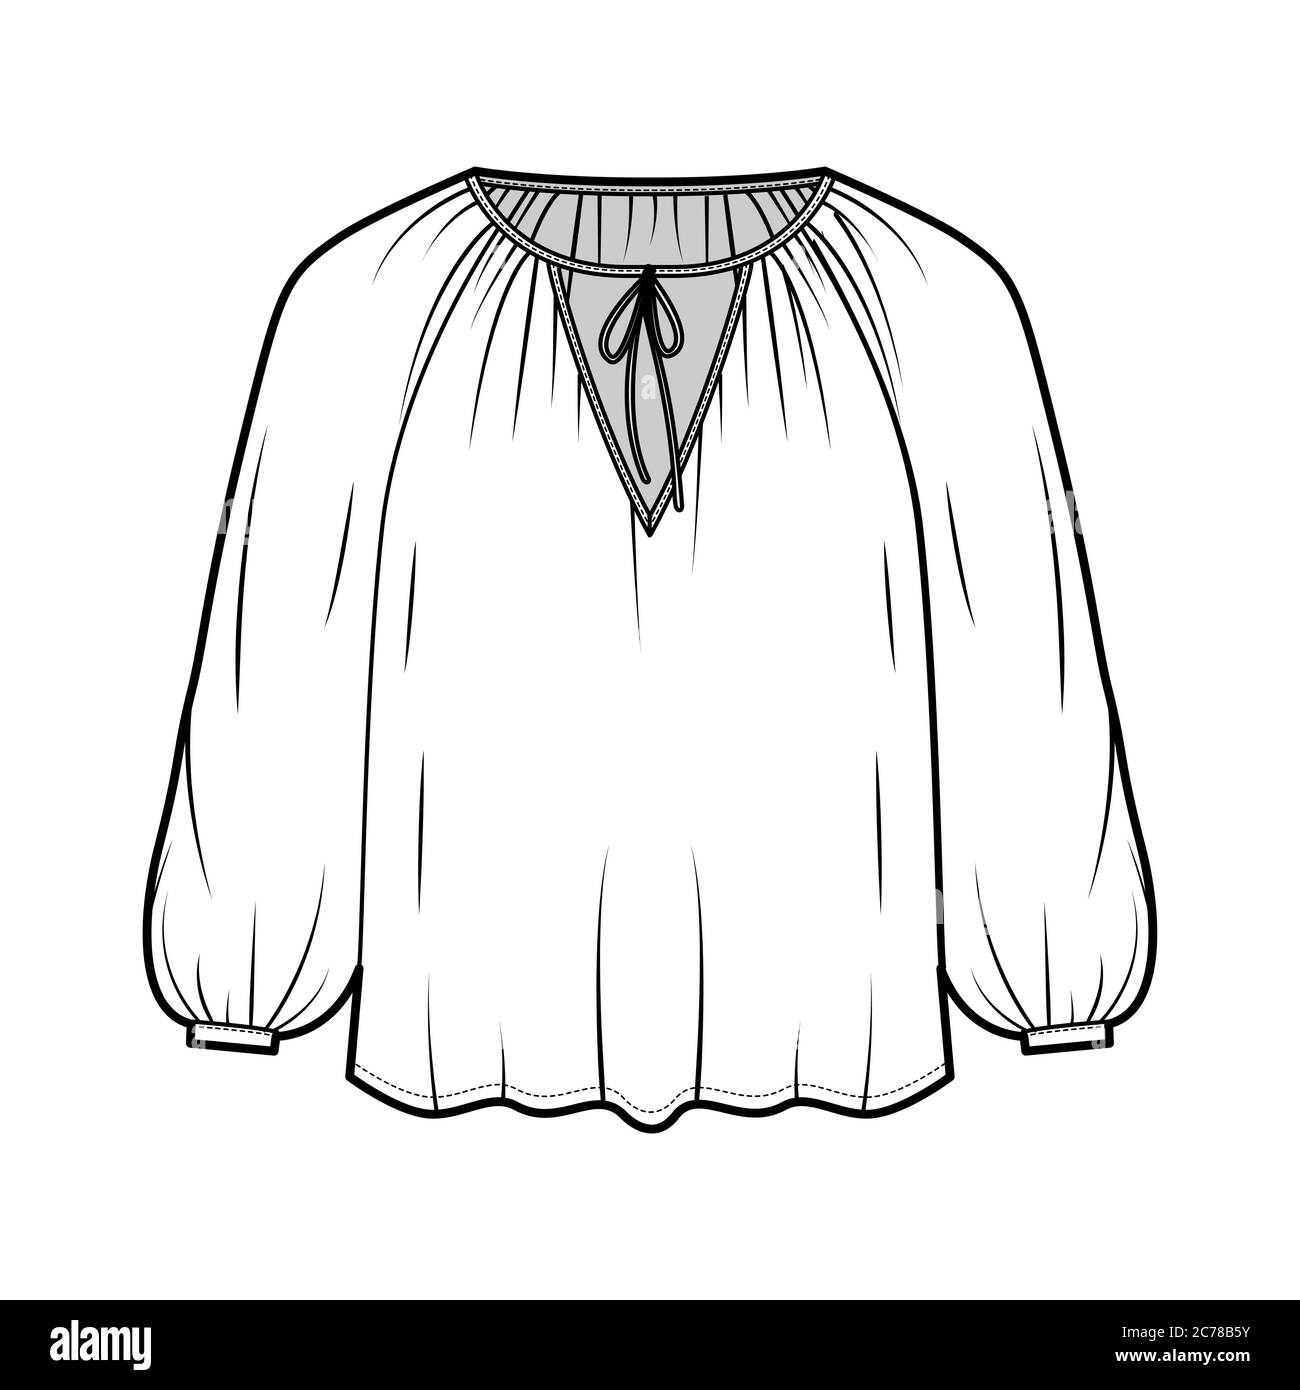 Cravate doux fronces encolure chemisier technique illustration de la mode  avec la forme lâche, manches longues, draperies de façon fluide. Modèle de  vêtement pour chemise plate sur le devant, couleur blanche. Maquette